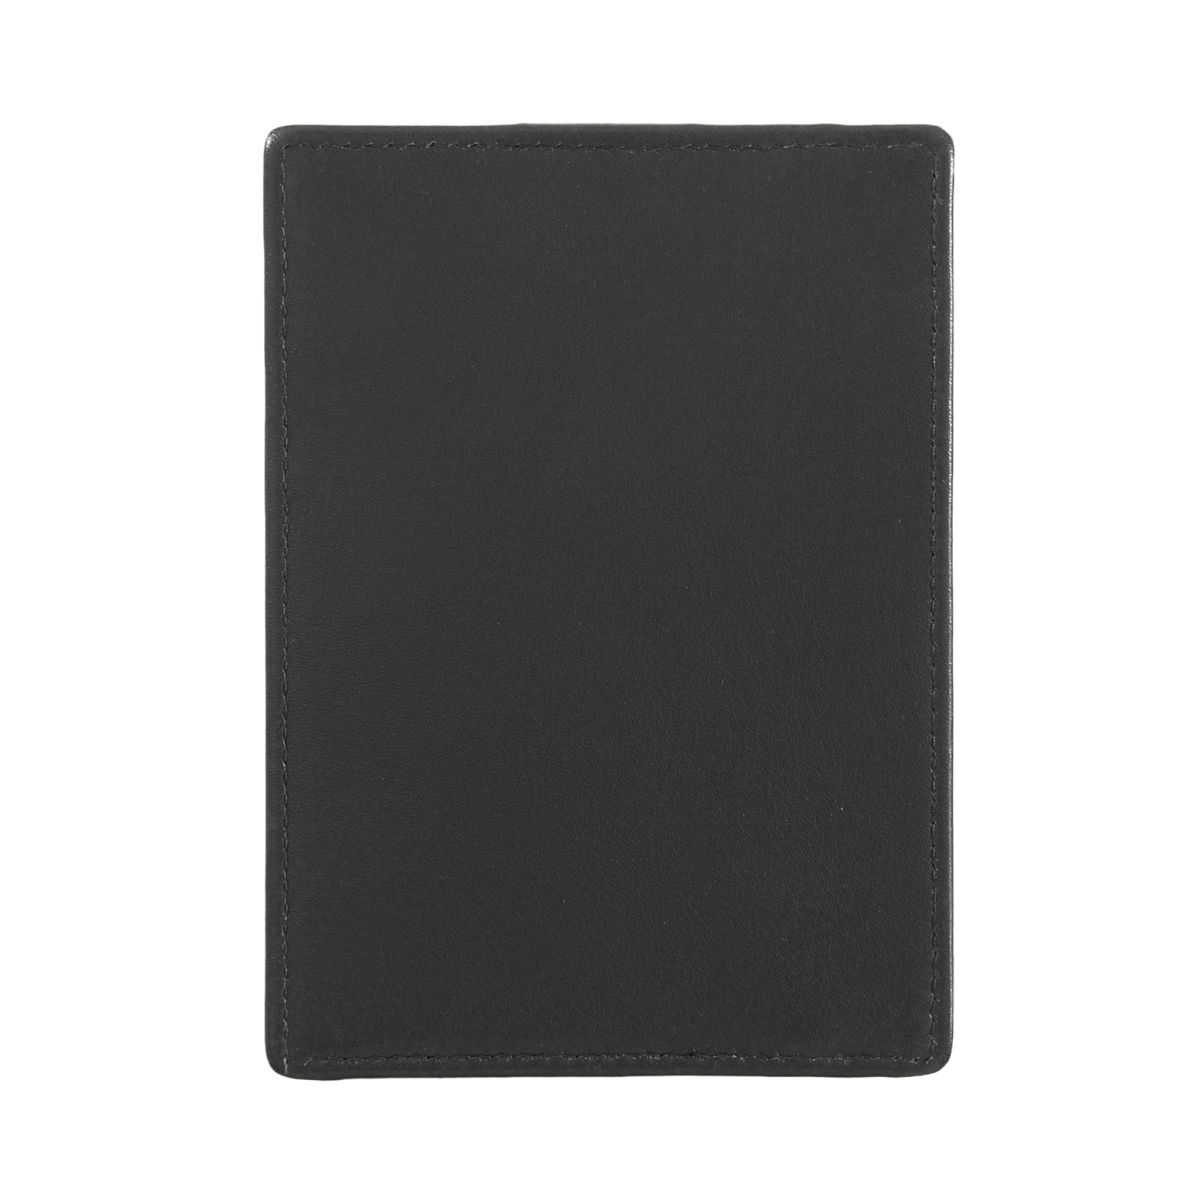 DuDu Compact multi color credit card holder wallet - Black